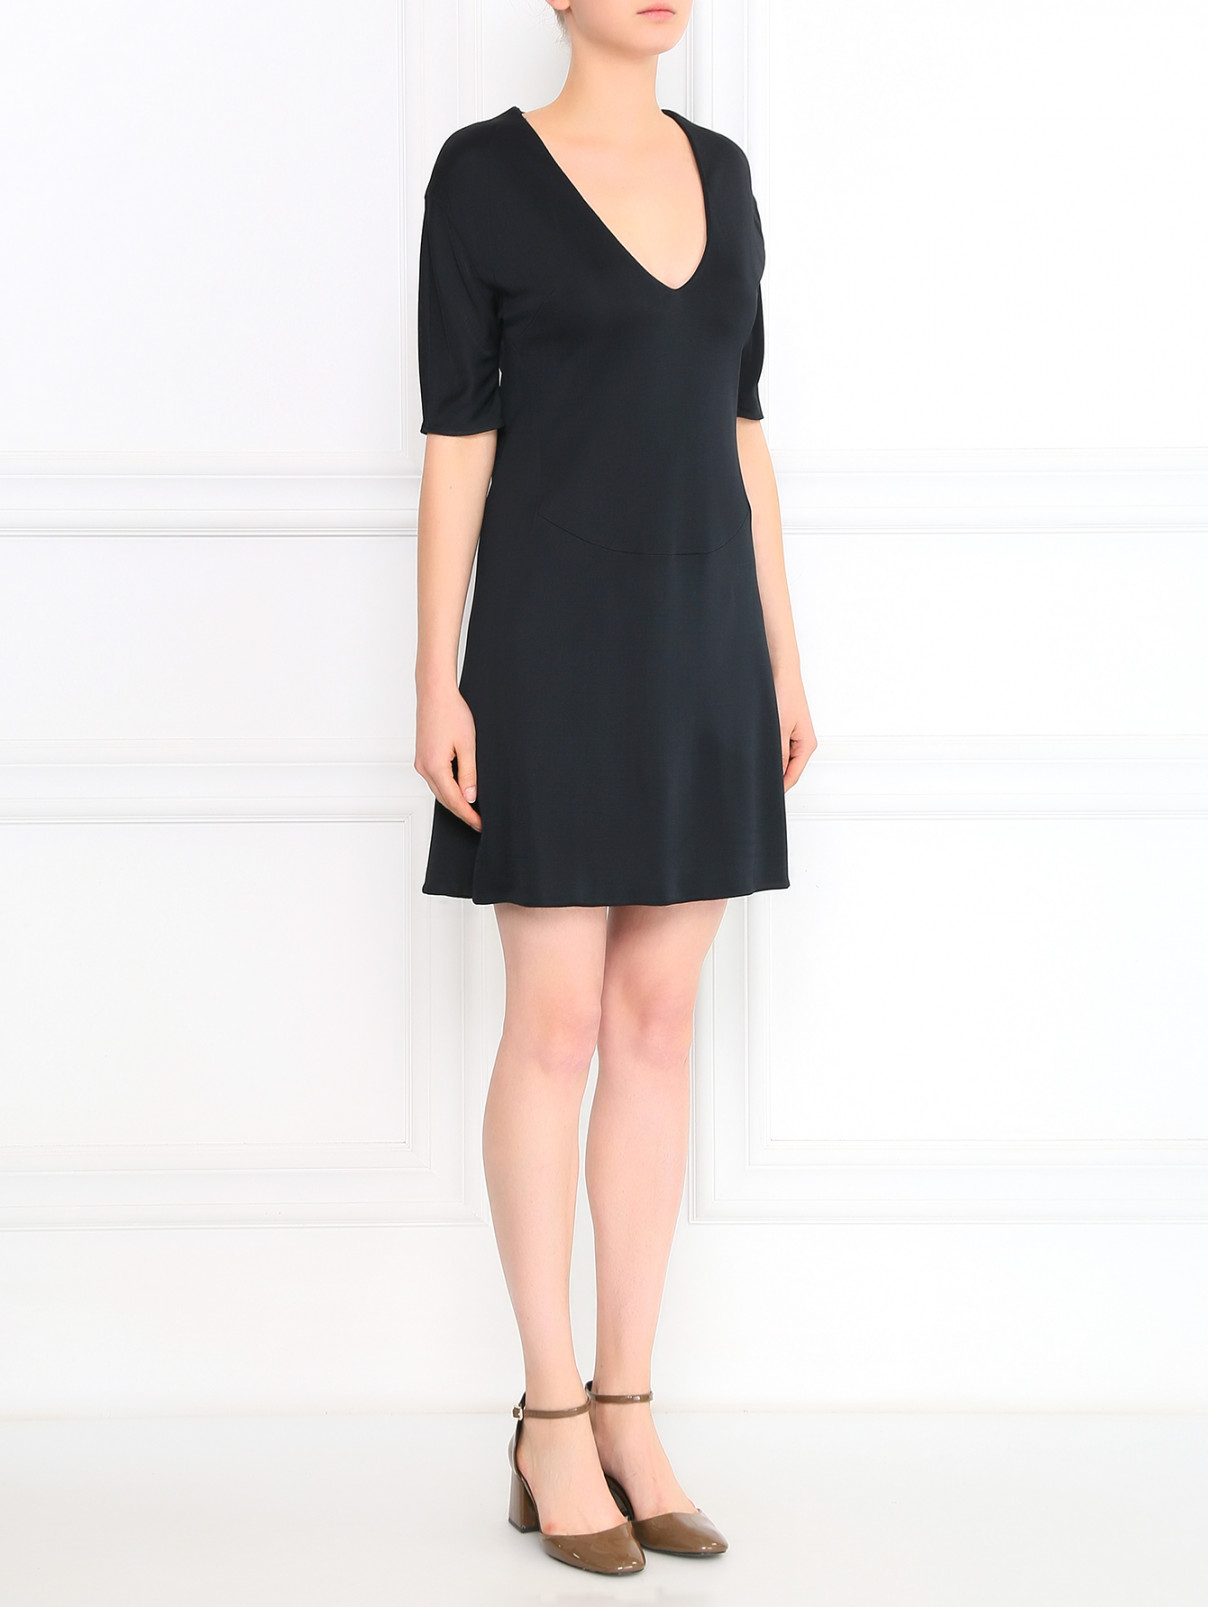 Трикотажное мини-платье Antonio Berardi  –  Модель Общий вид  – Цвет:  Черный